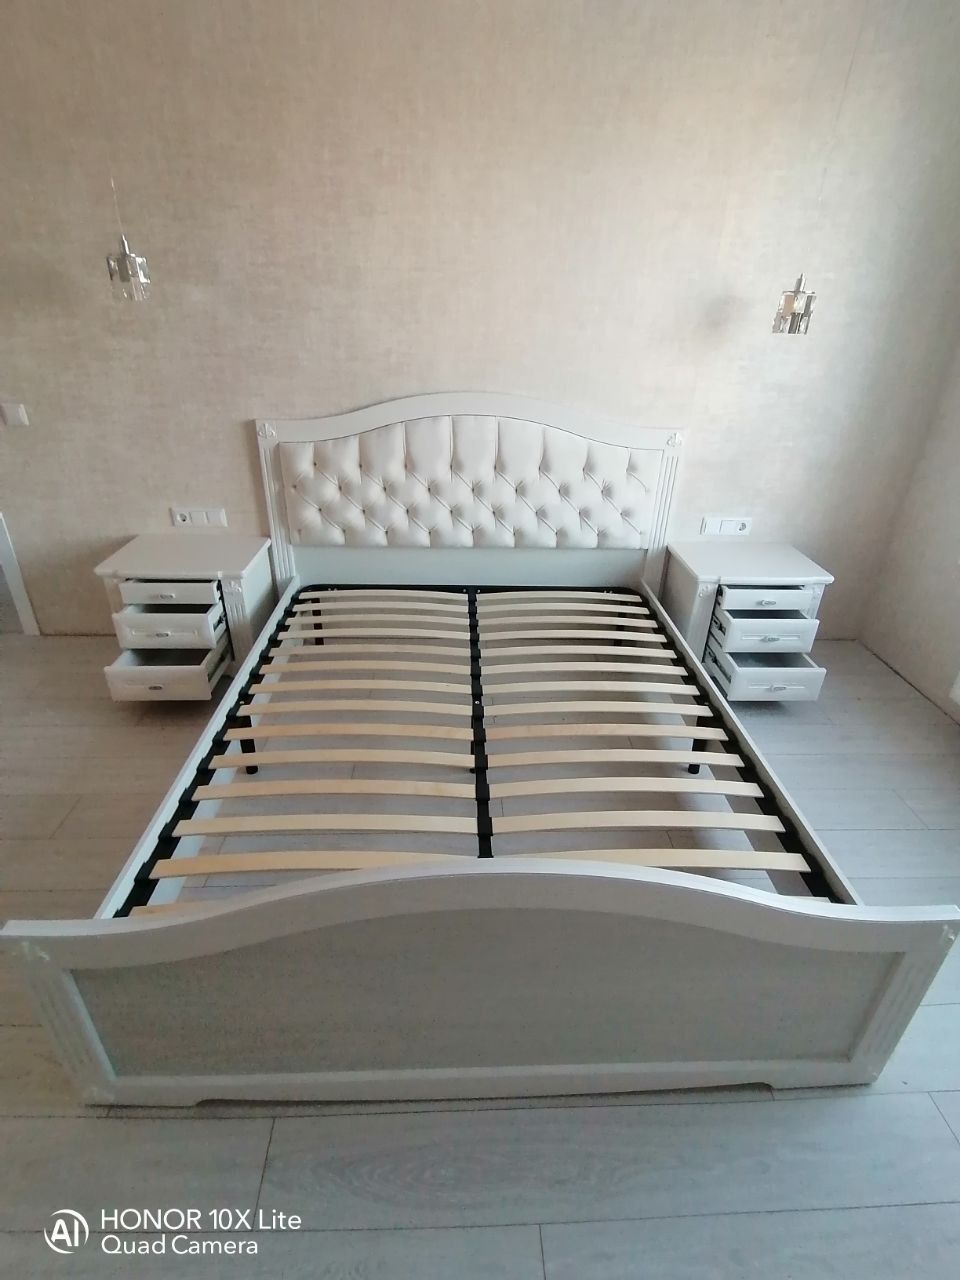 Полутораспальная кровать "Сорренто" 120х190 с подъемным мех-ом цвет ясень серебро изножье высокое